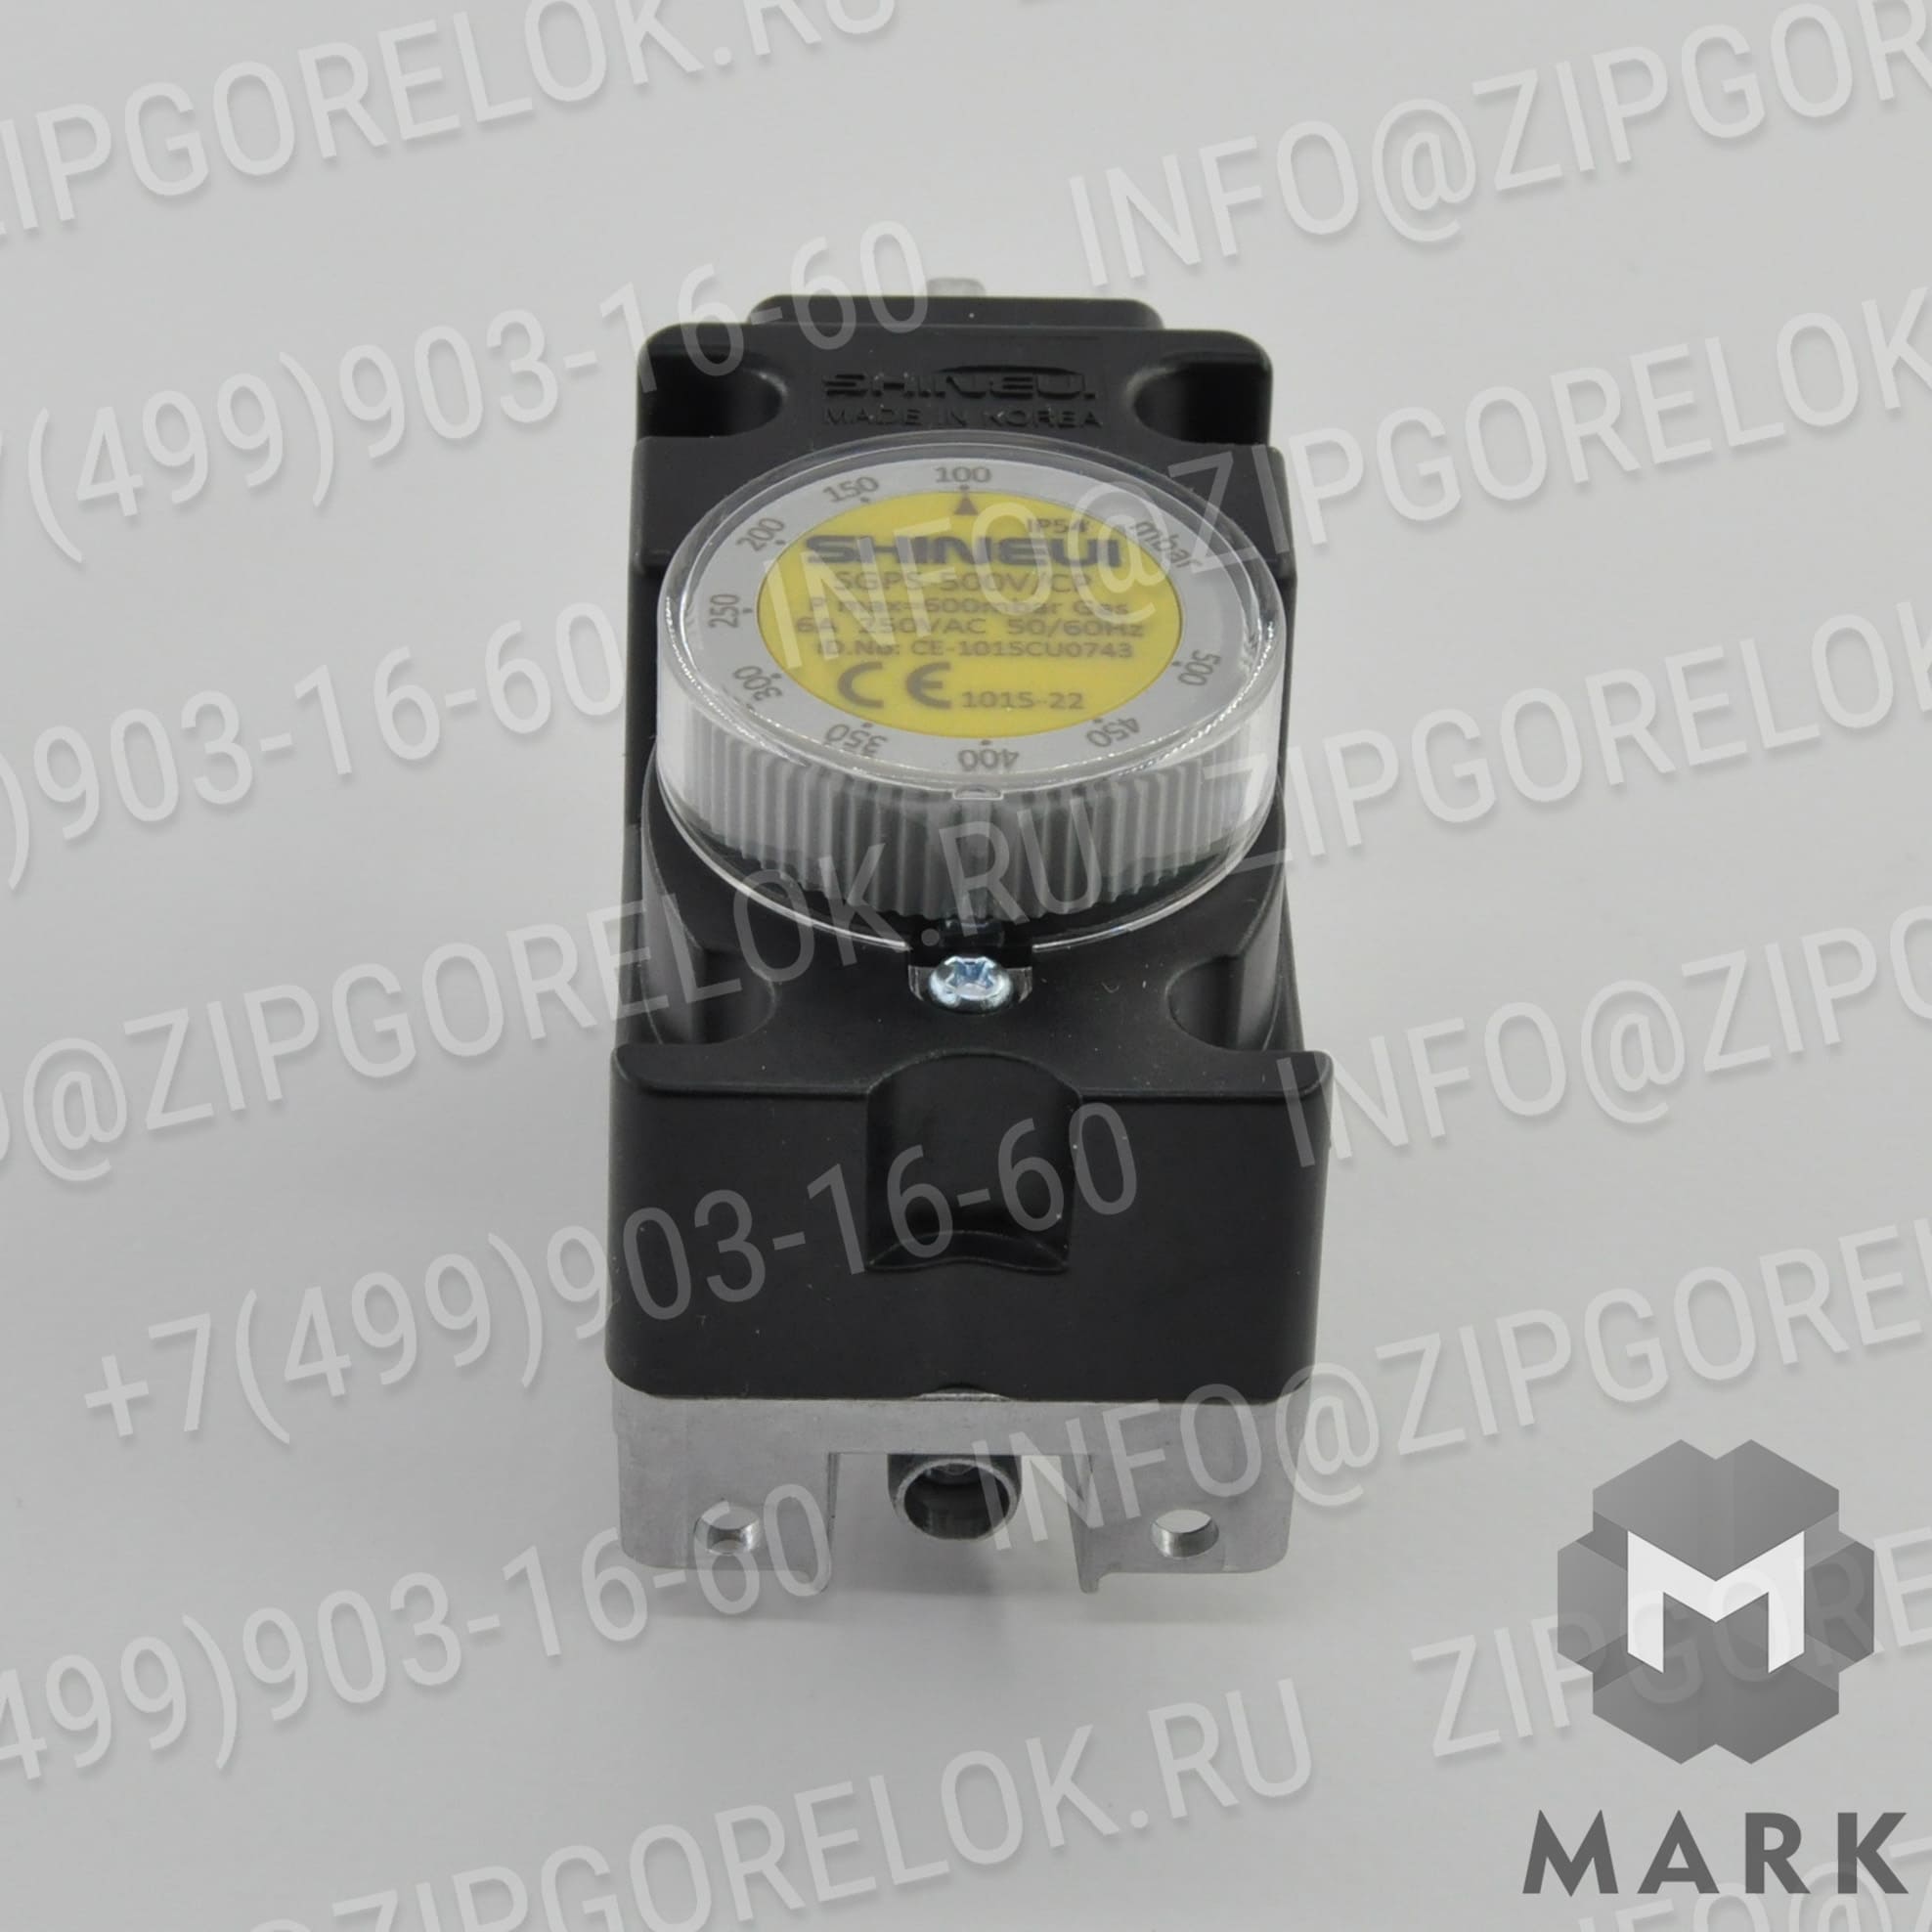 SGPS-500V-CP Реле давления: Гильза для установки датчиков температуры G1/2" X 225 мм